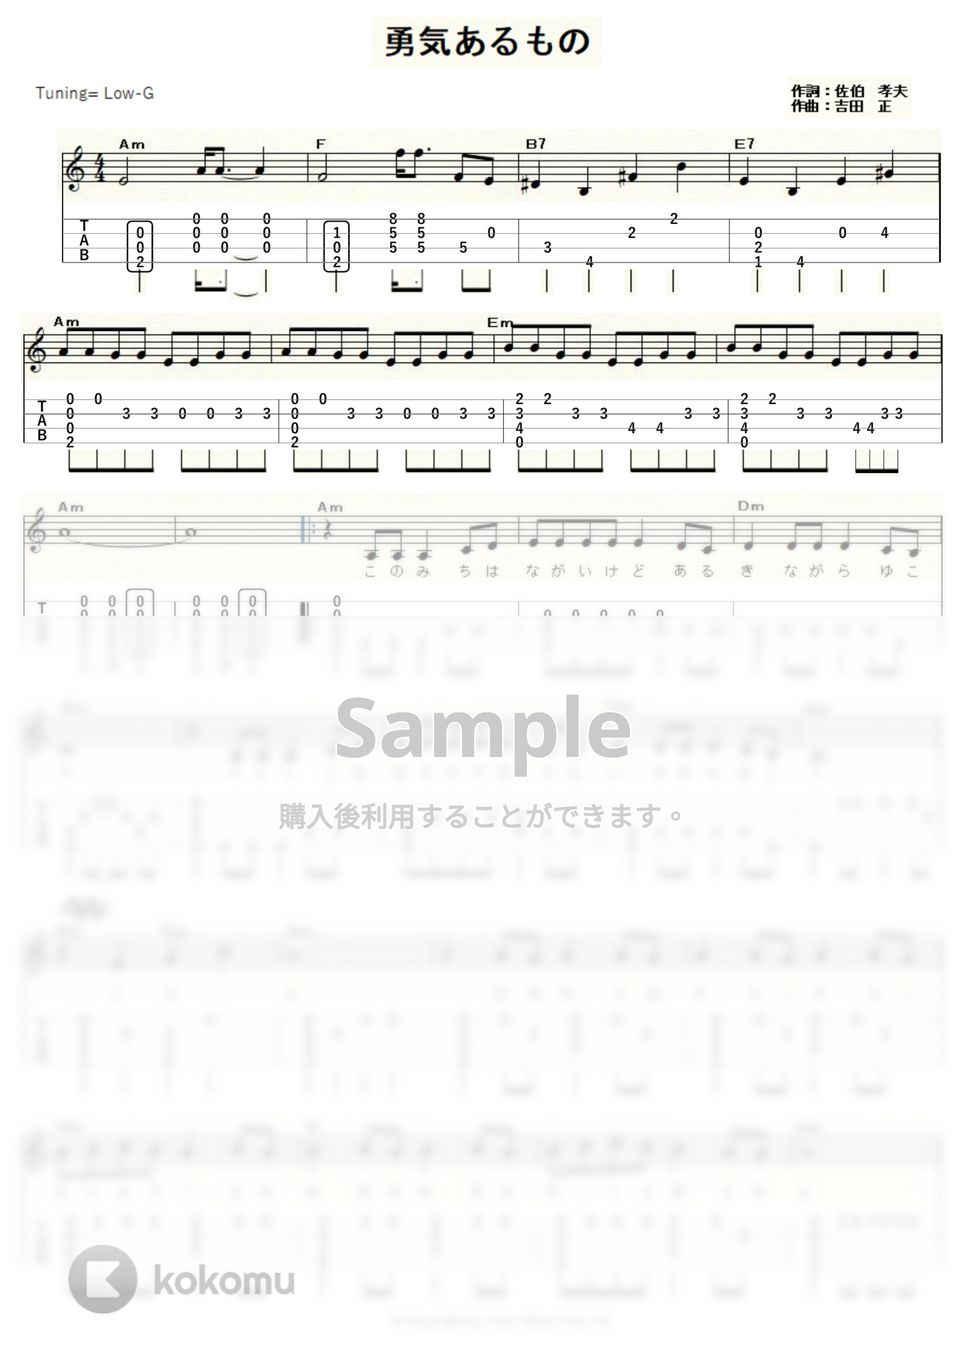 吉永小百合 - 勇気あるもの (ｳｸﾚﾚｿﾛ/Low-G/初級～中級) by ukulelepapa